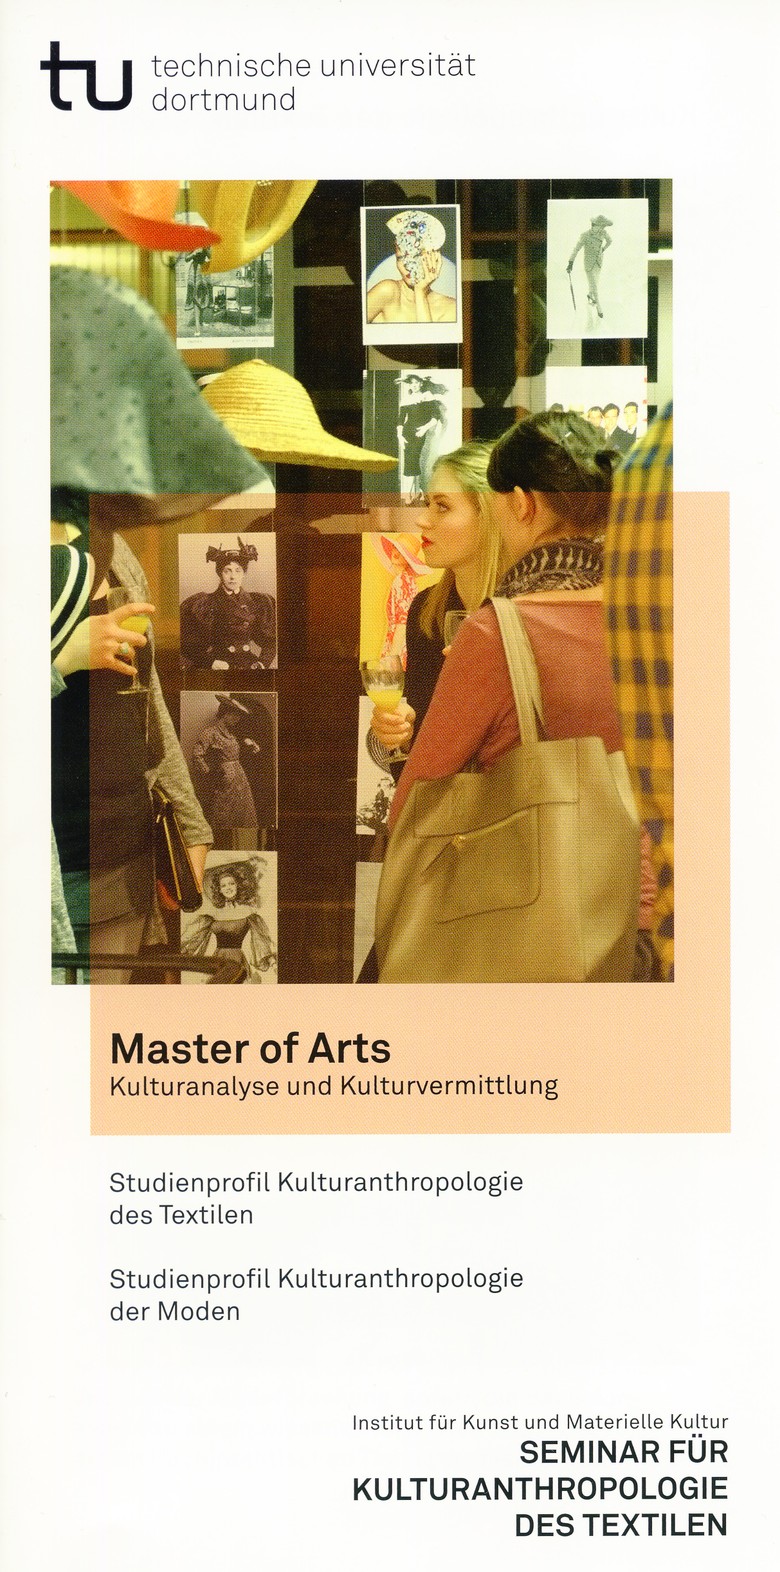 Der Flyer mit kompakten Informationen zu dem neuen Studiengang an der TU Dortmund kann unter dem folgenden Link heruntergeladen werden:  http://www.fk.16.tu-dortmund.de/textil/03_studium/pdfs/kompaktinfos_flyer/MA-KuK-kompaktinfo_flyer.pdf